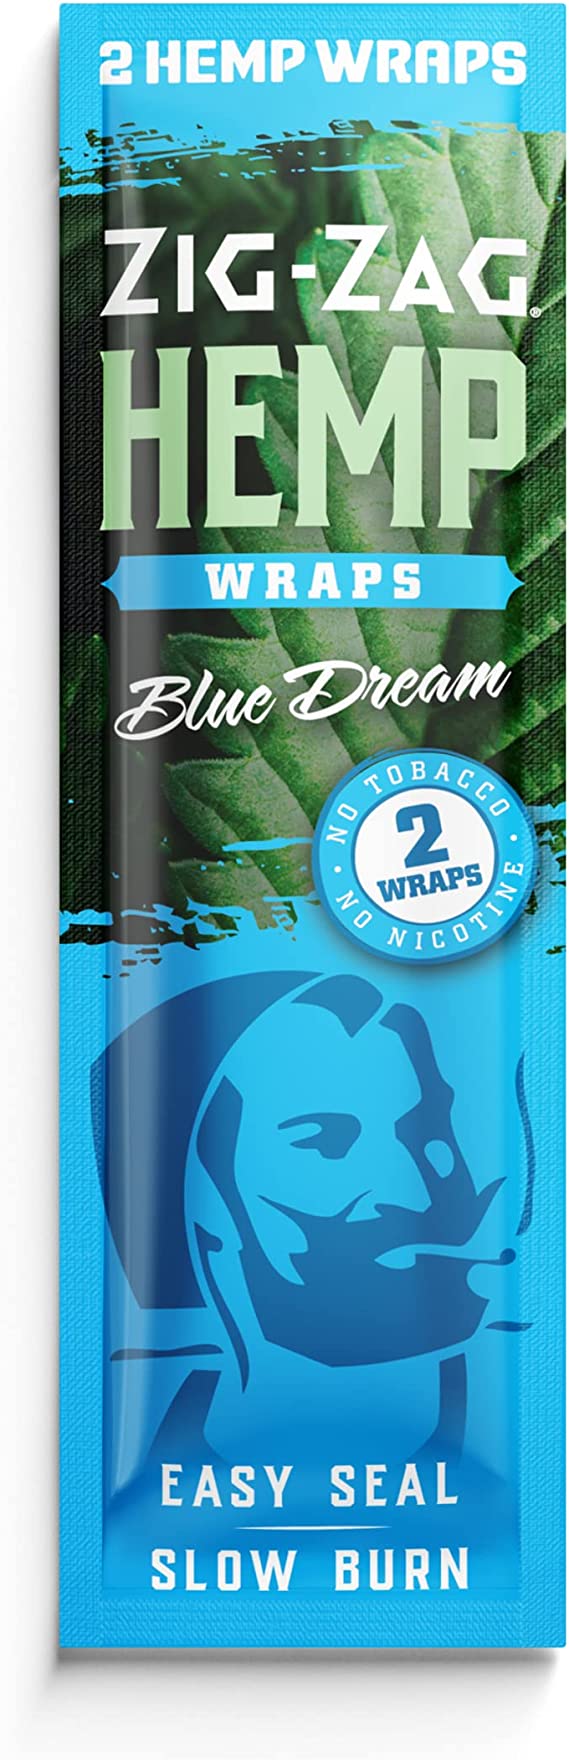 Zig Zag Hemp Wraps - Blue Dream